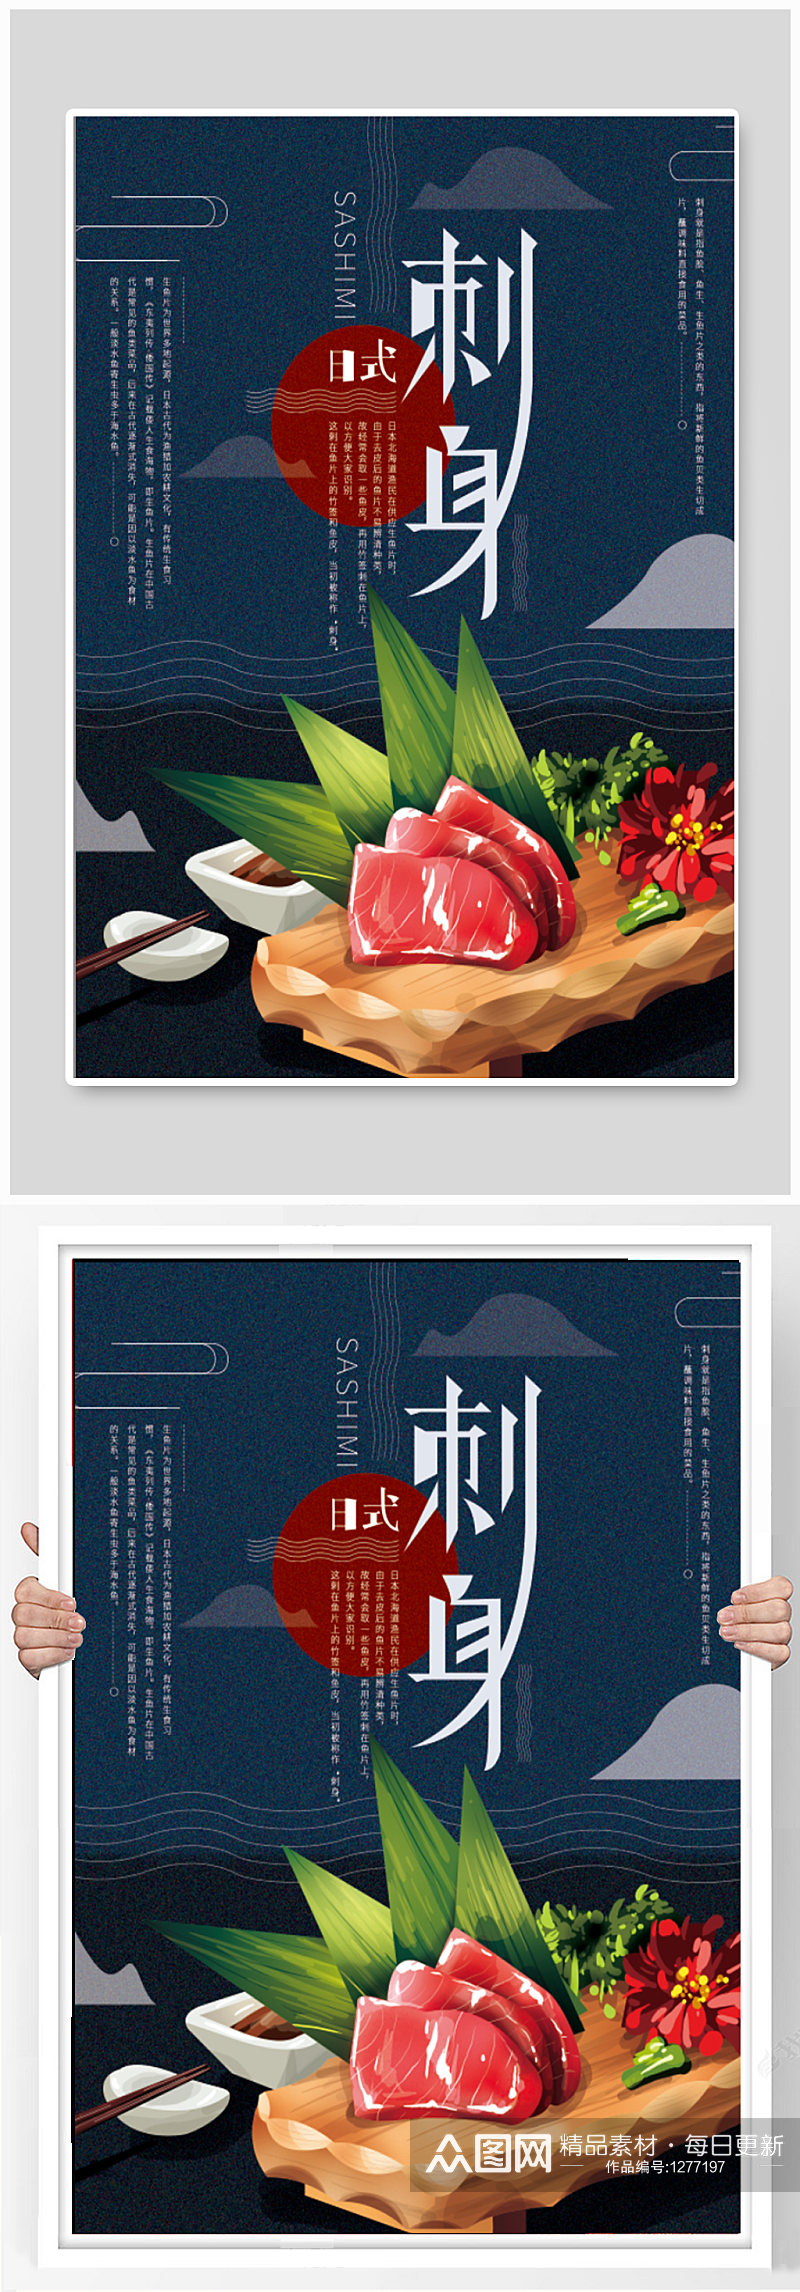 日式美食刺身海报素材